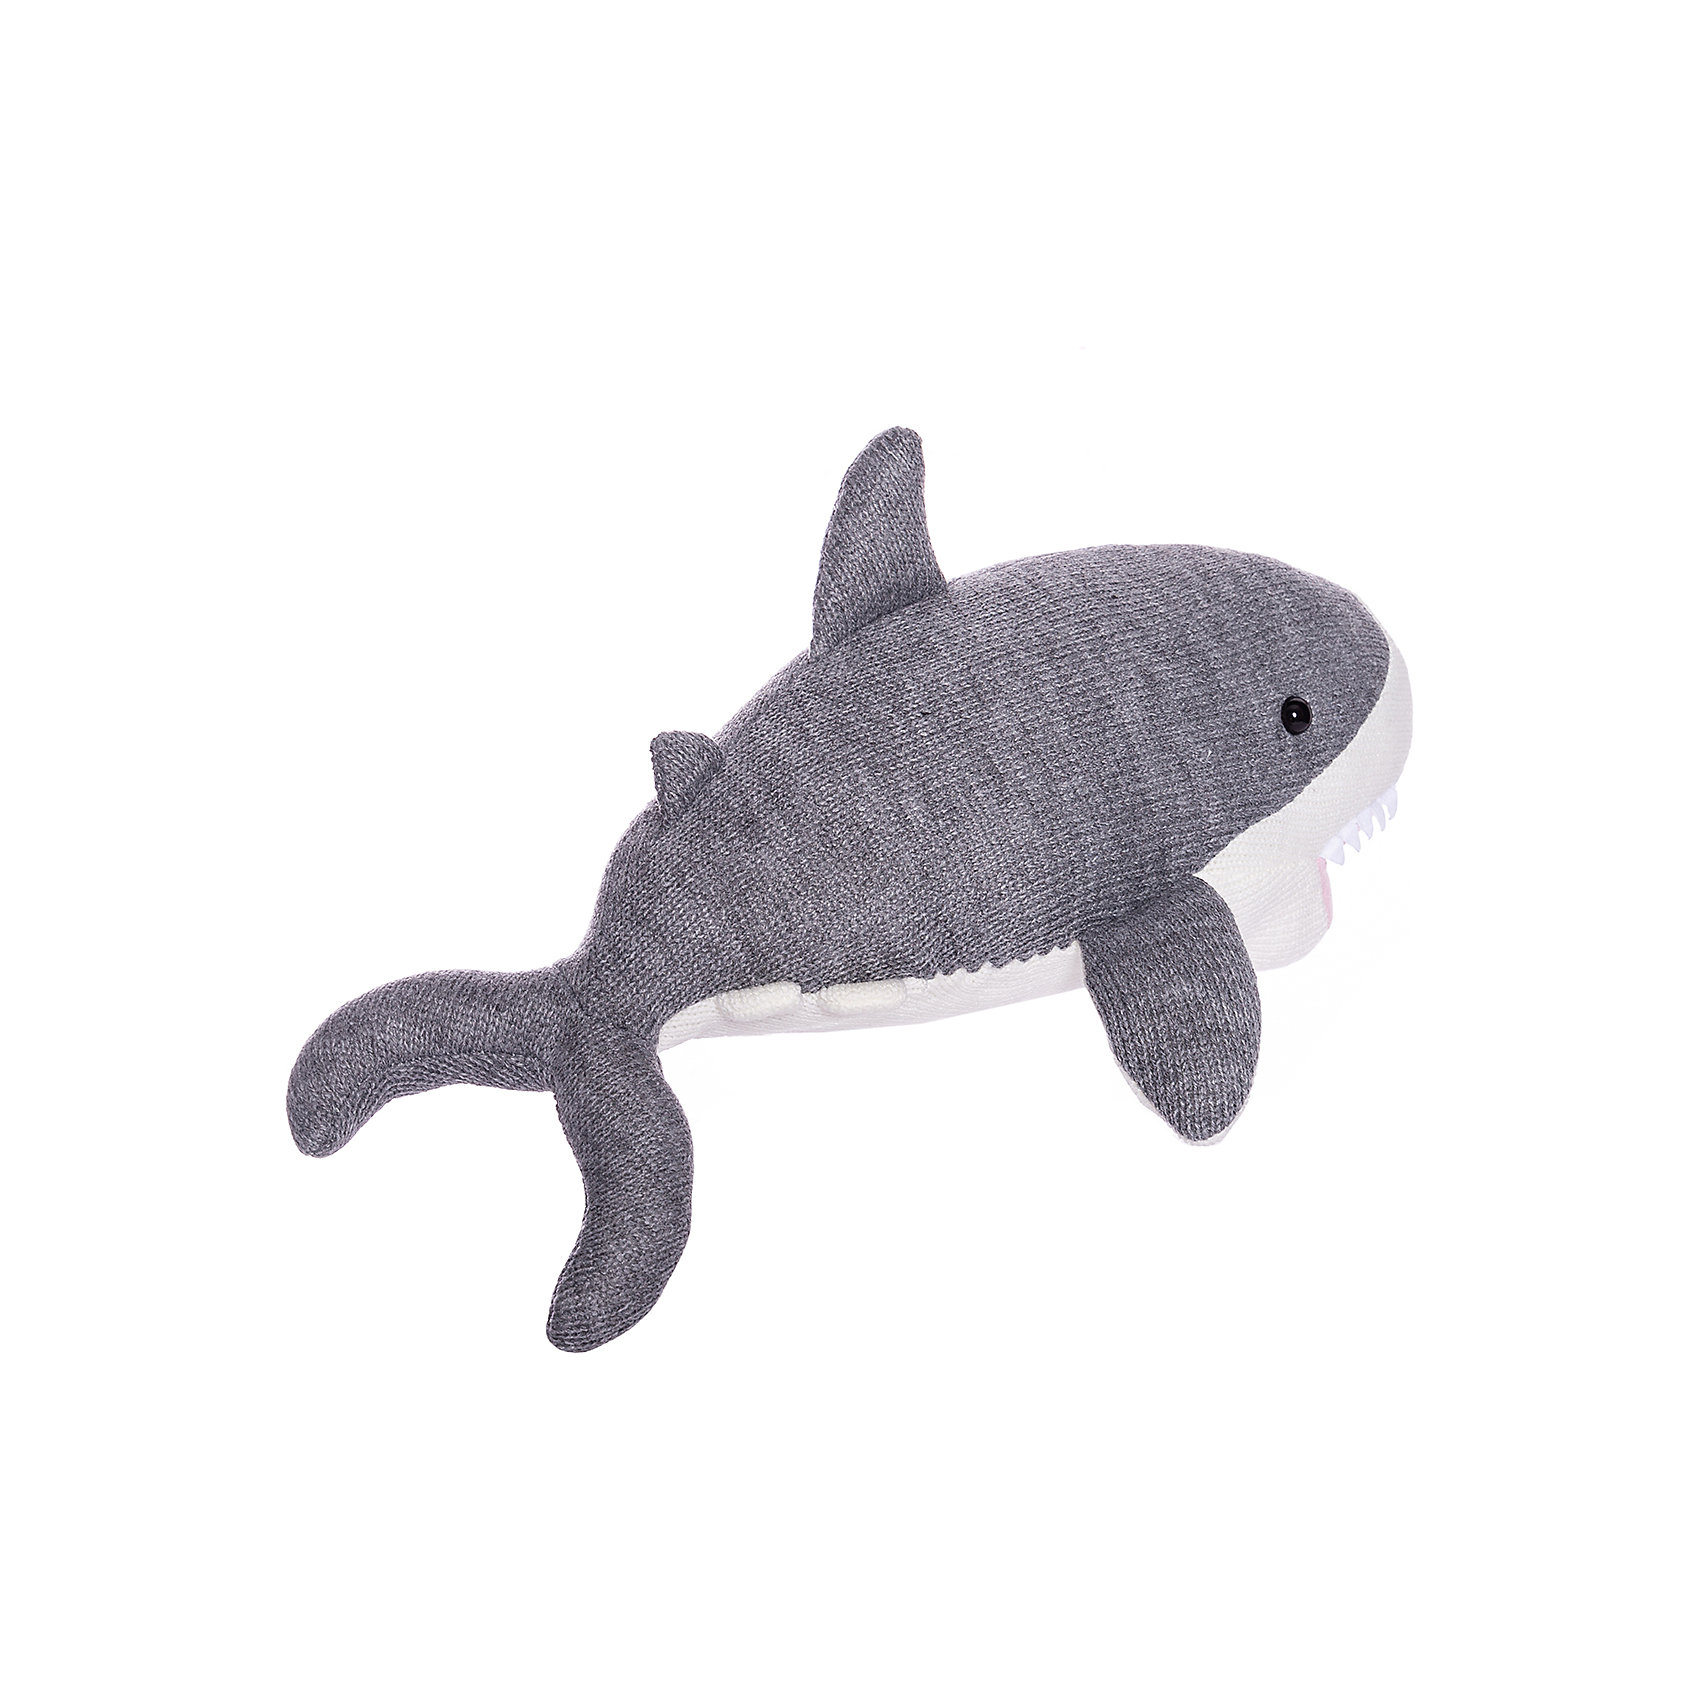 Вязаная игрушка Knitted Акула, 40 см ABtoys 16690154